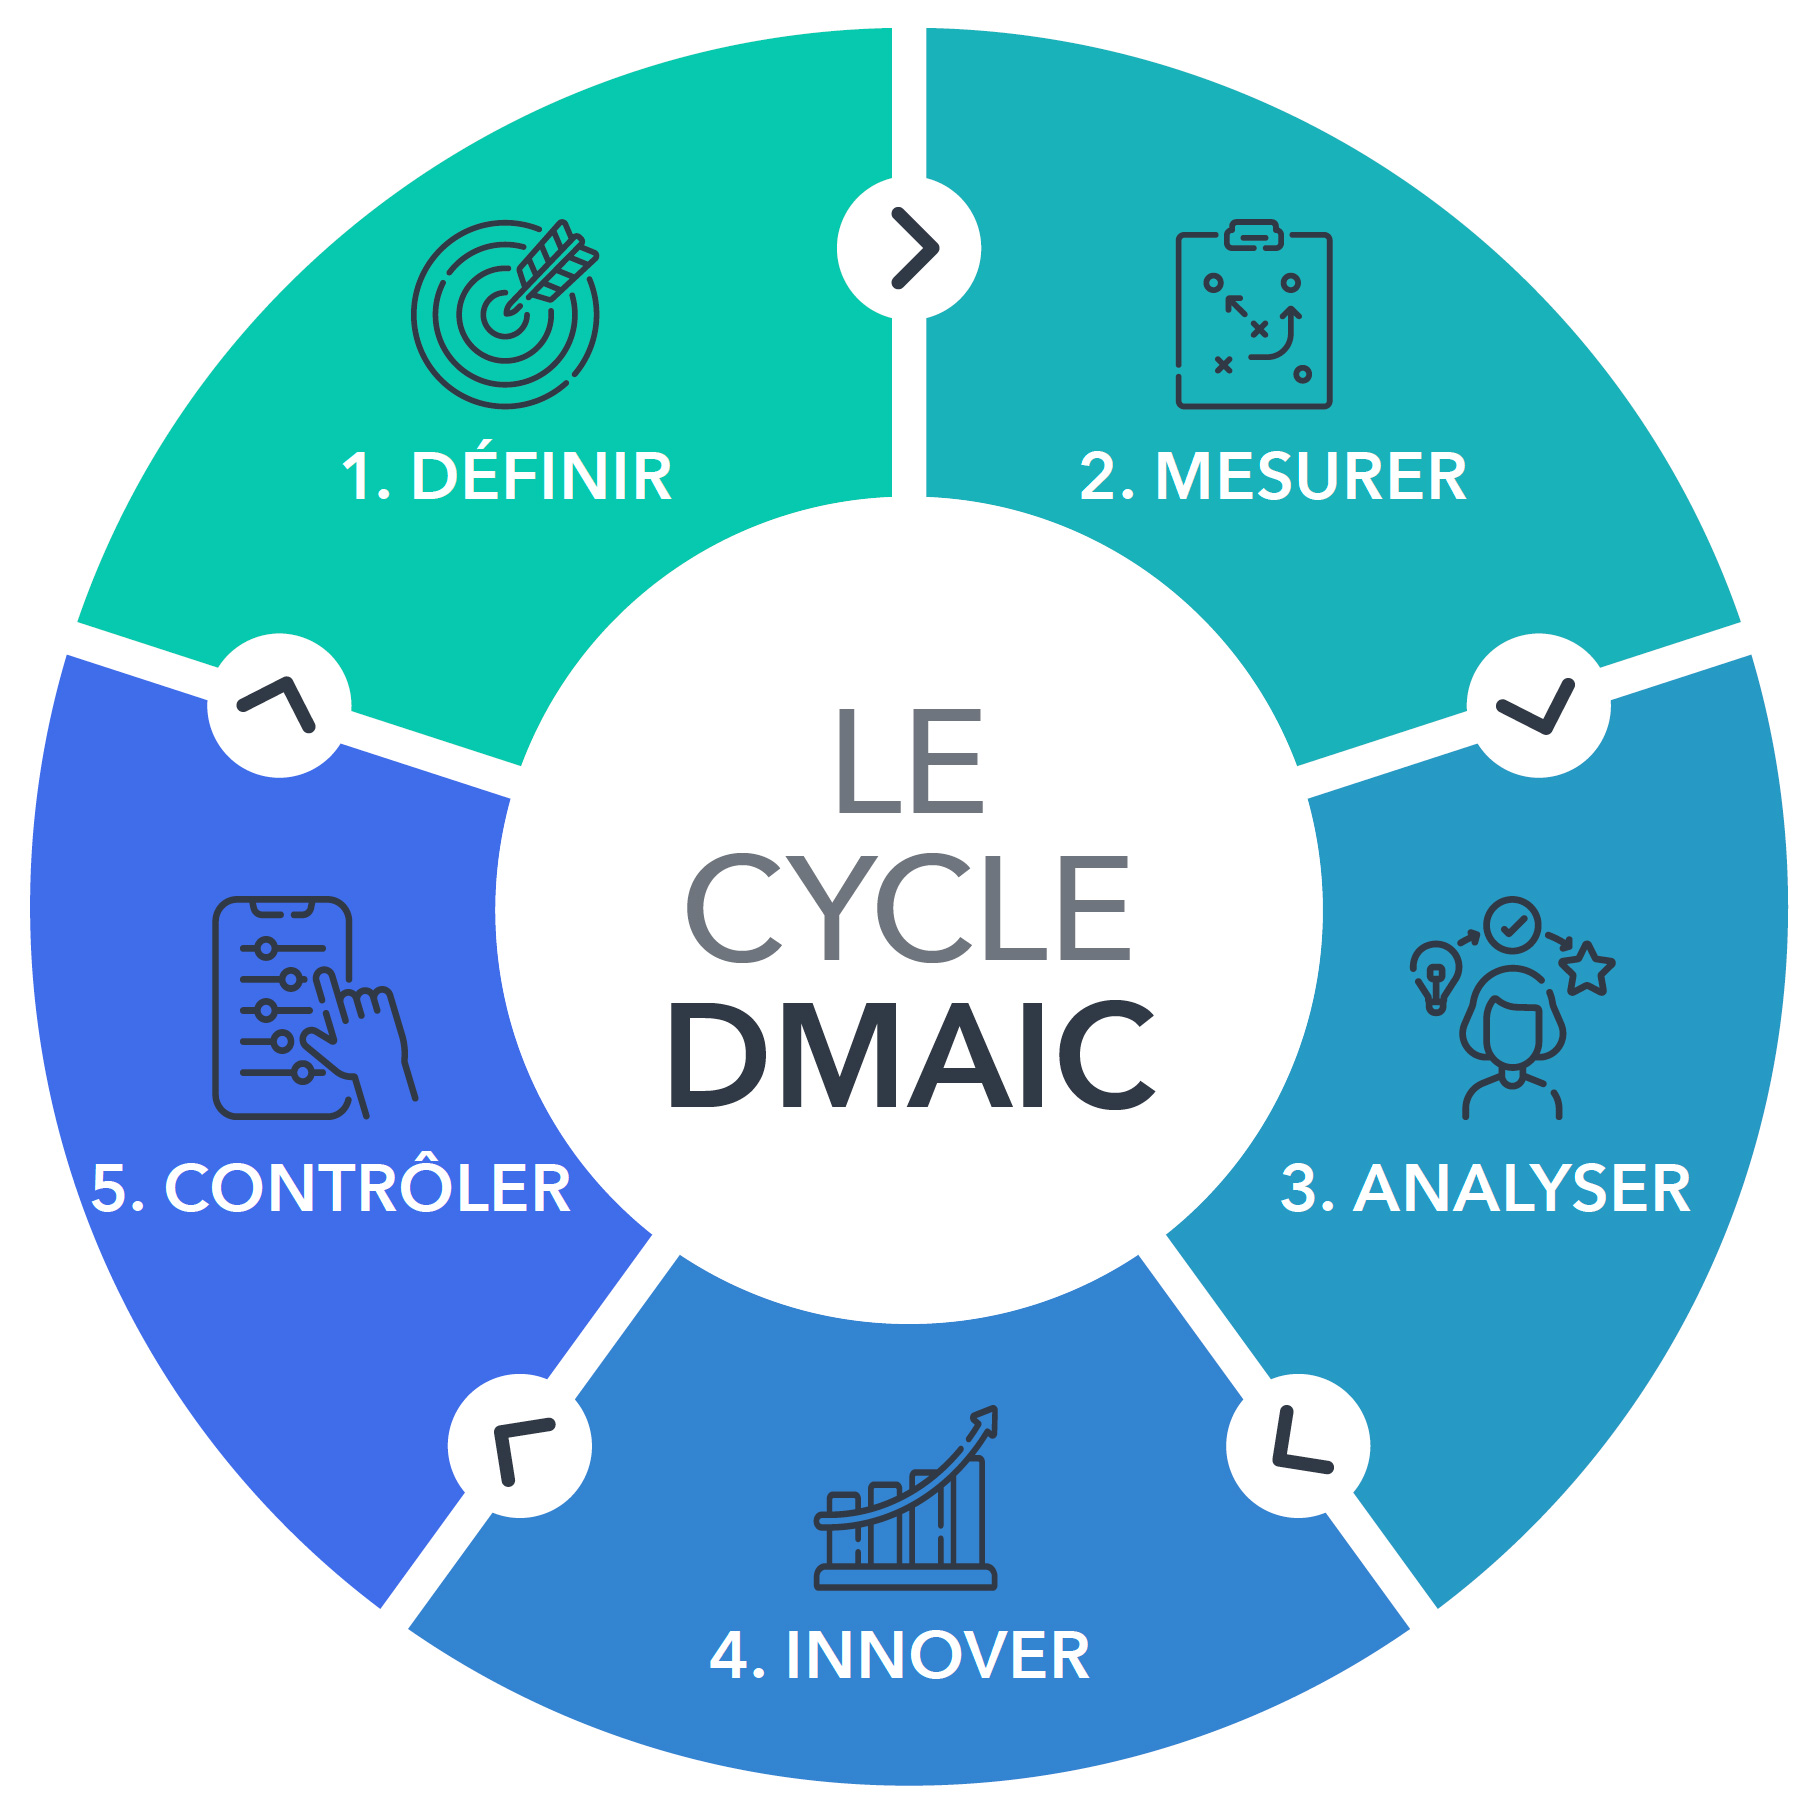 Les 5 étapes du cycle DMAIC : définir, mesurer, analyser, innoverer et contrôler.